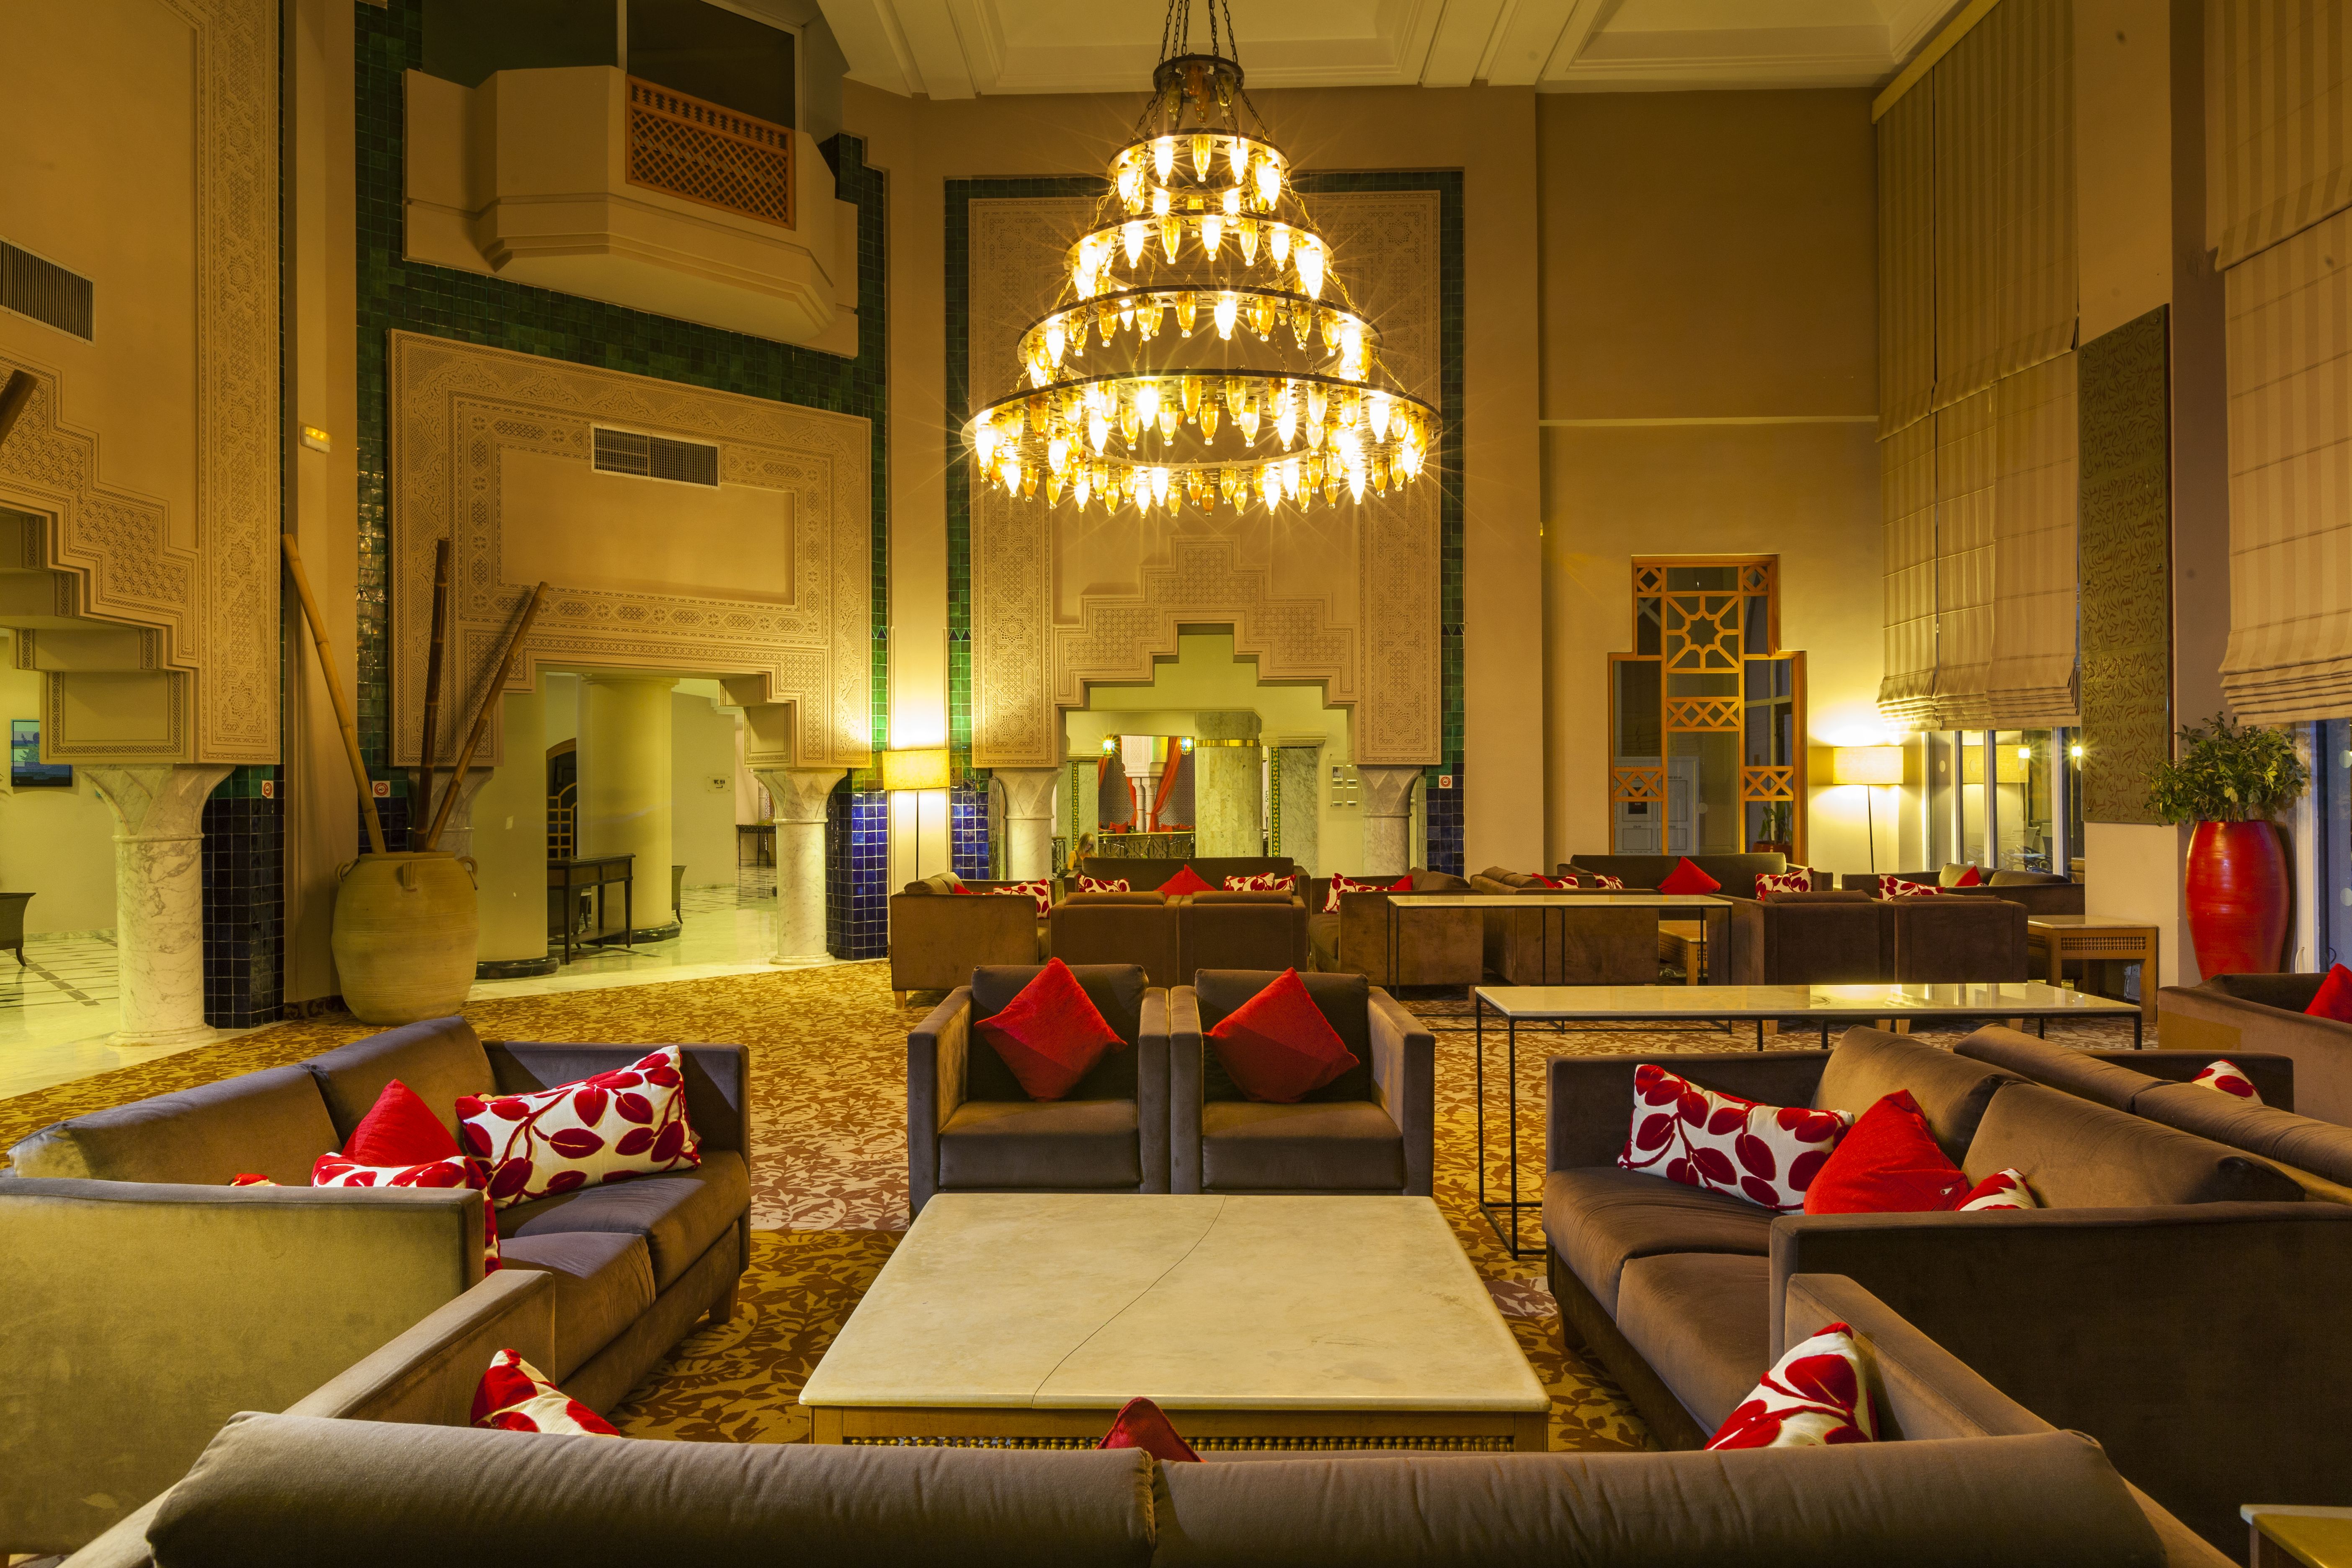 Hôtel Royal Kenz Thalasso et Spa 4* - cure thalasso incluse pas cher photo 20